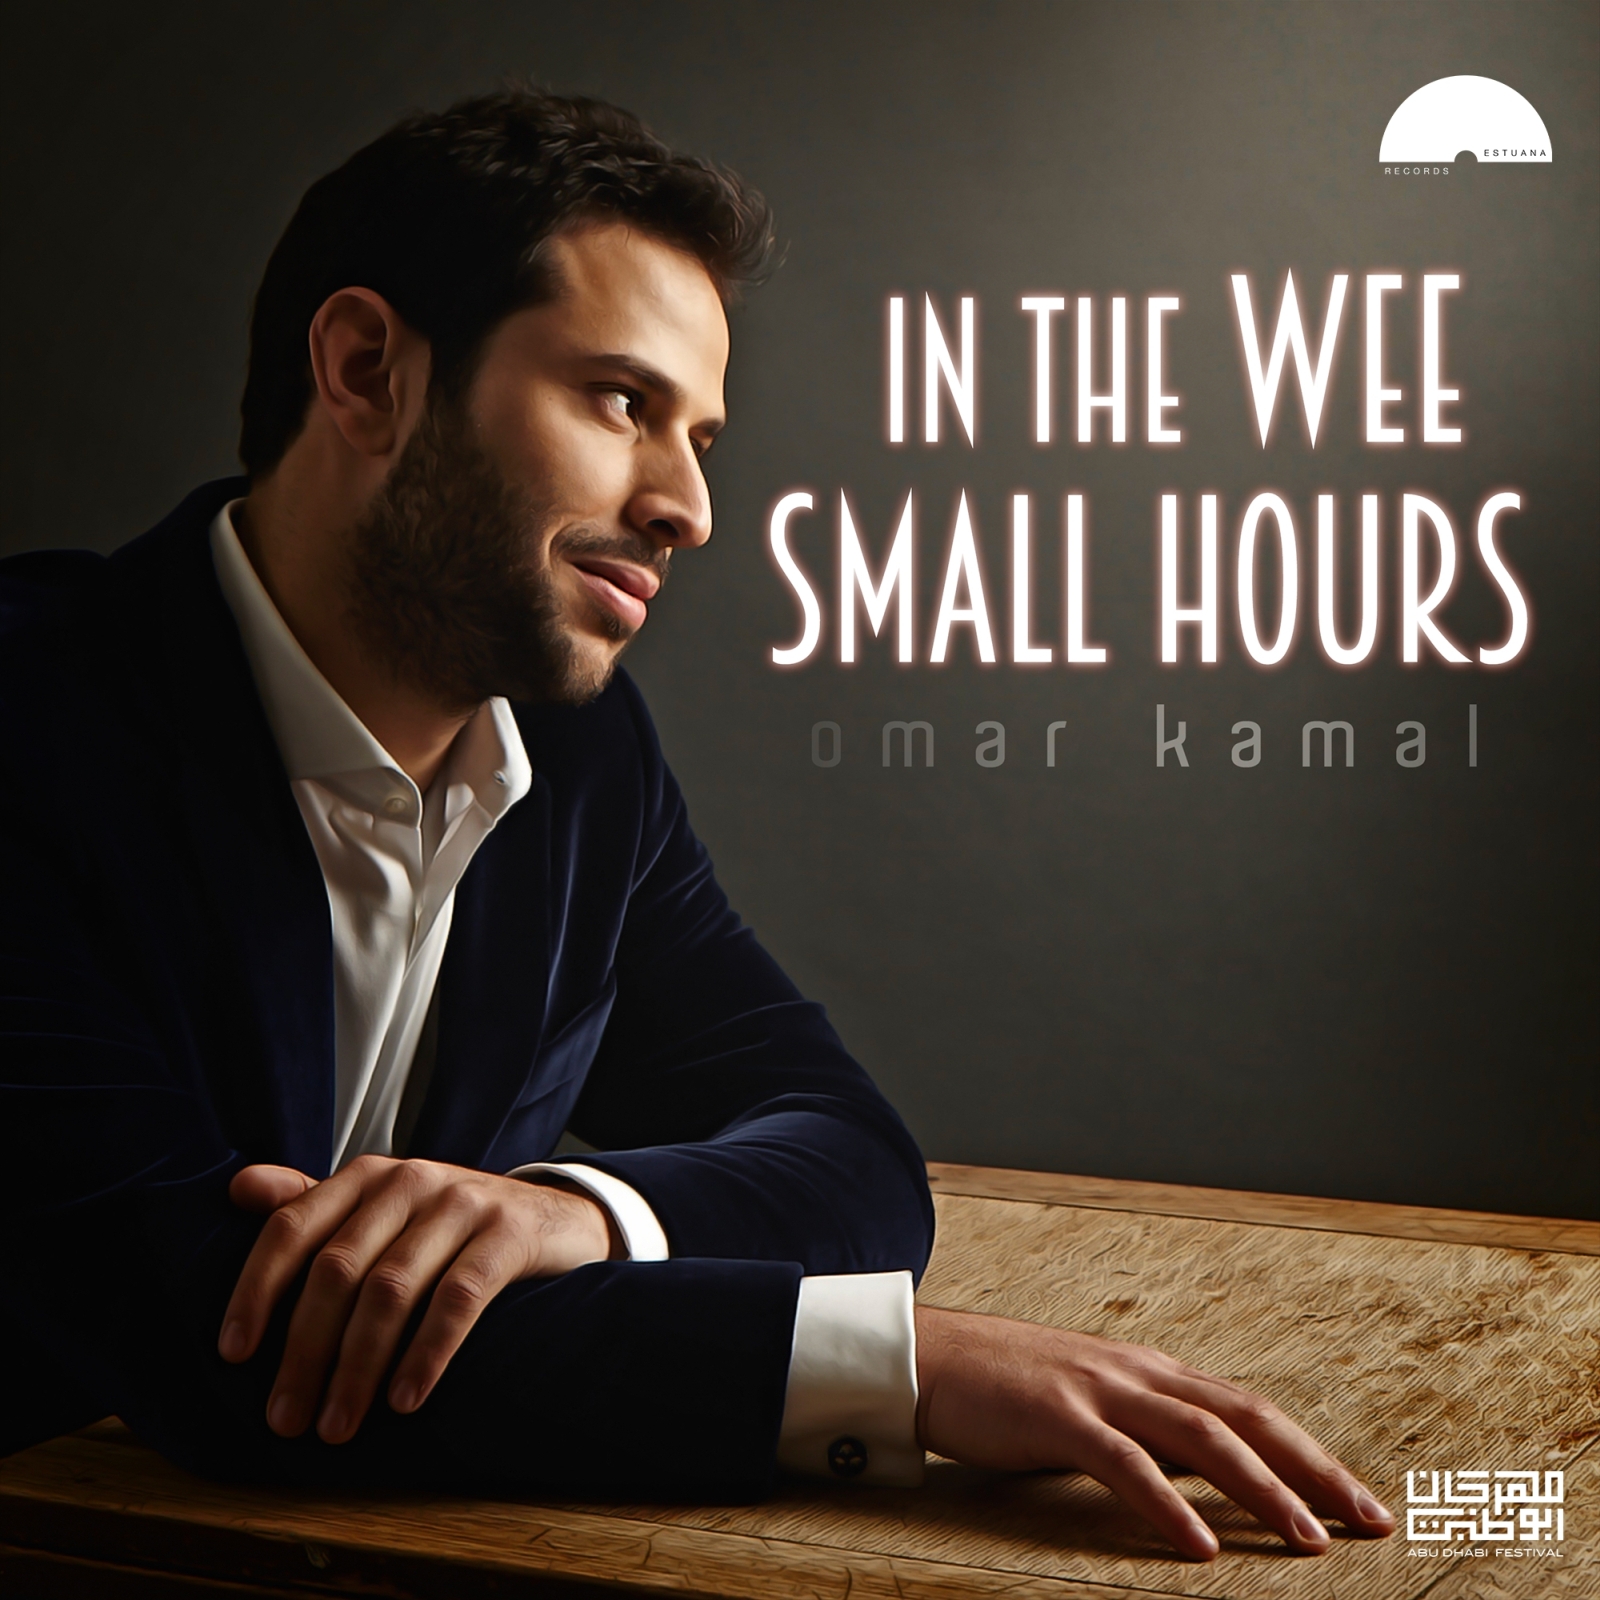 المغني الفلسطيني عمر كمال